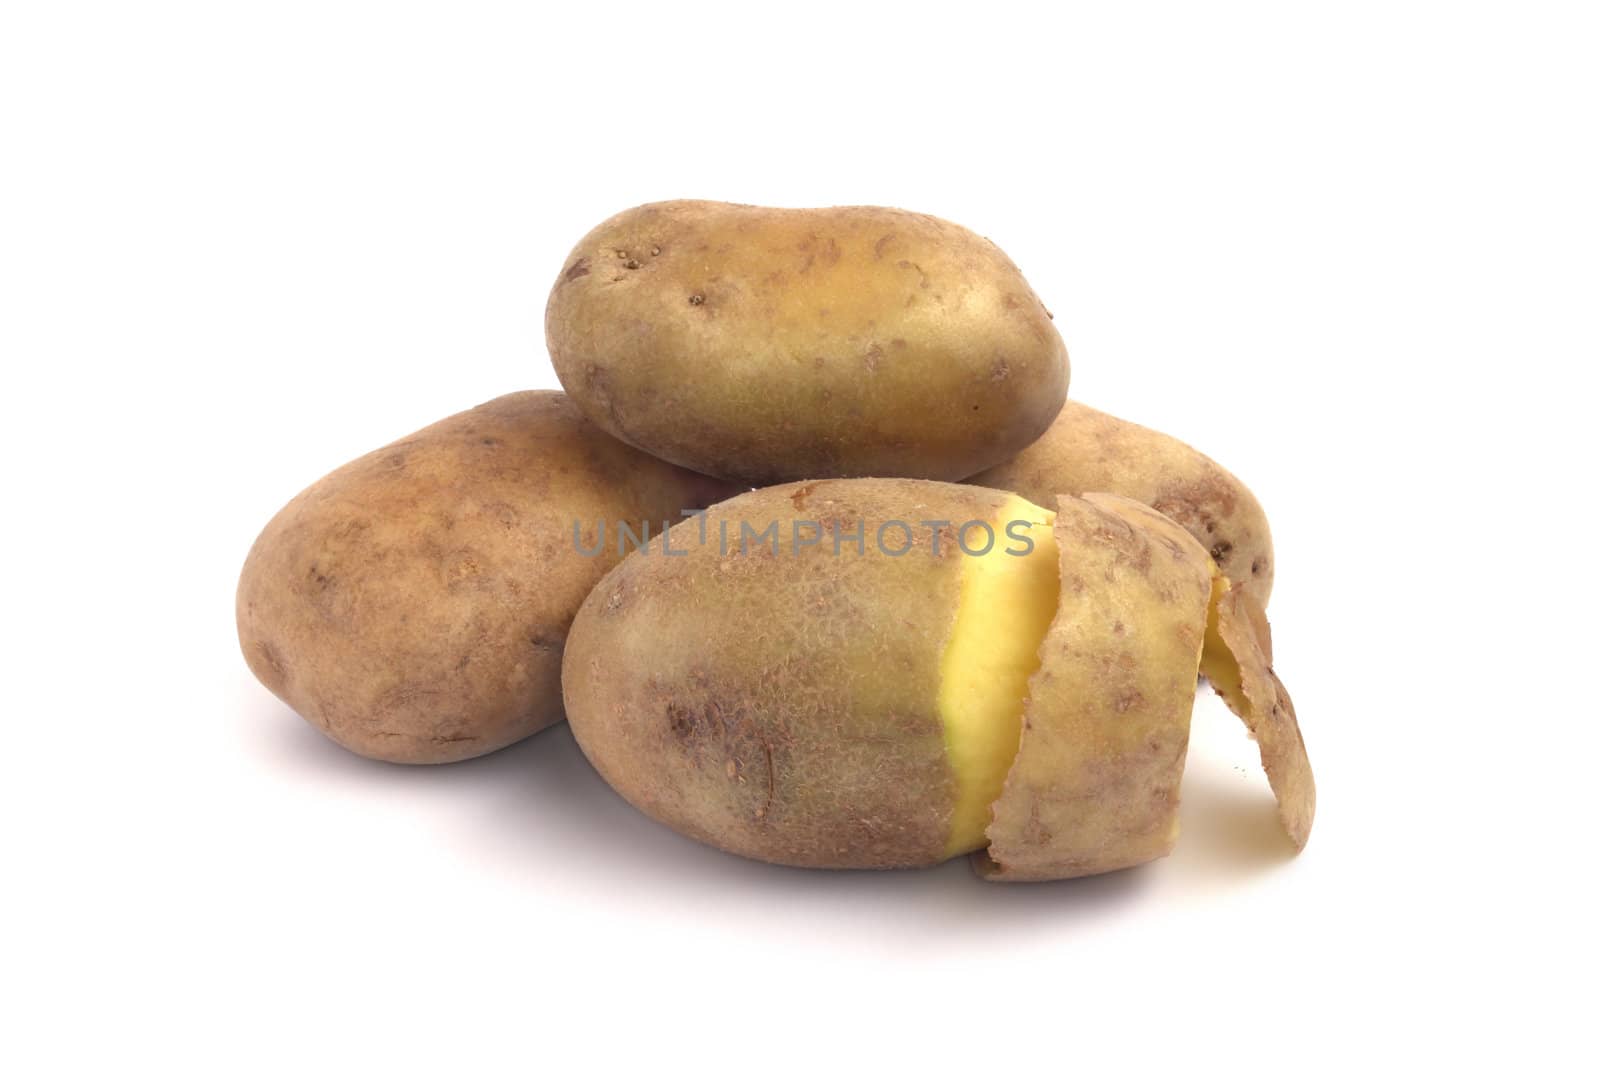 Peeled fresh potato close up isolated on white